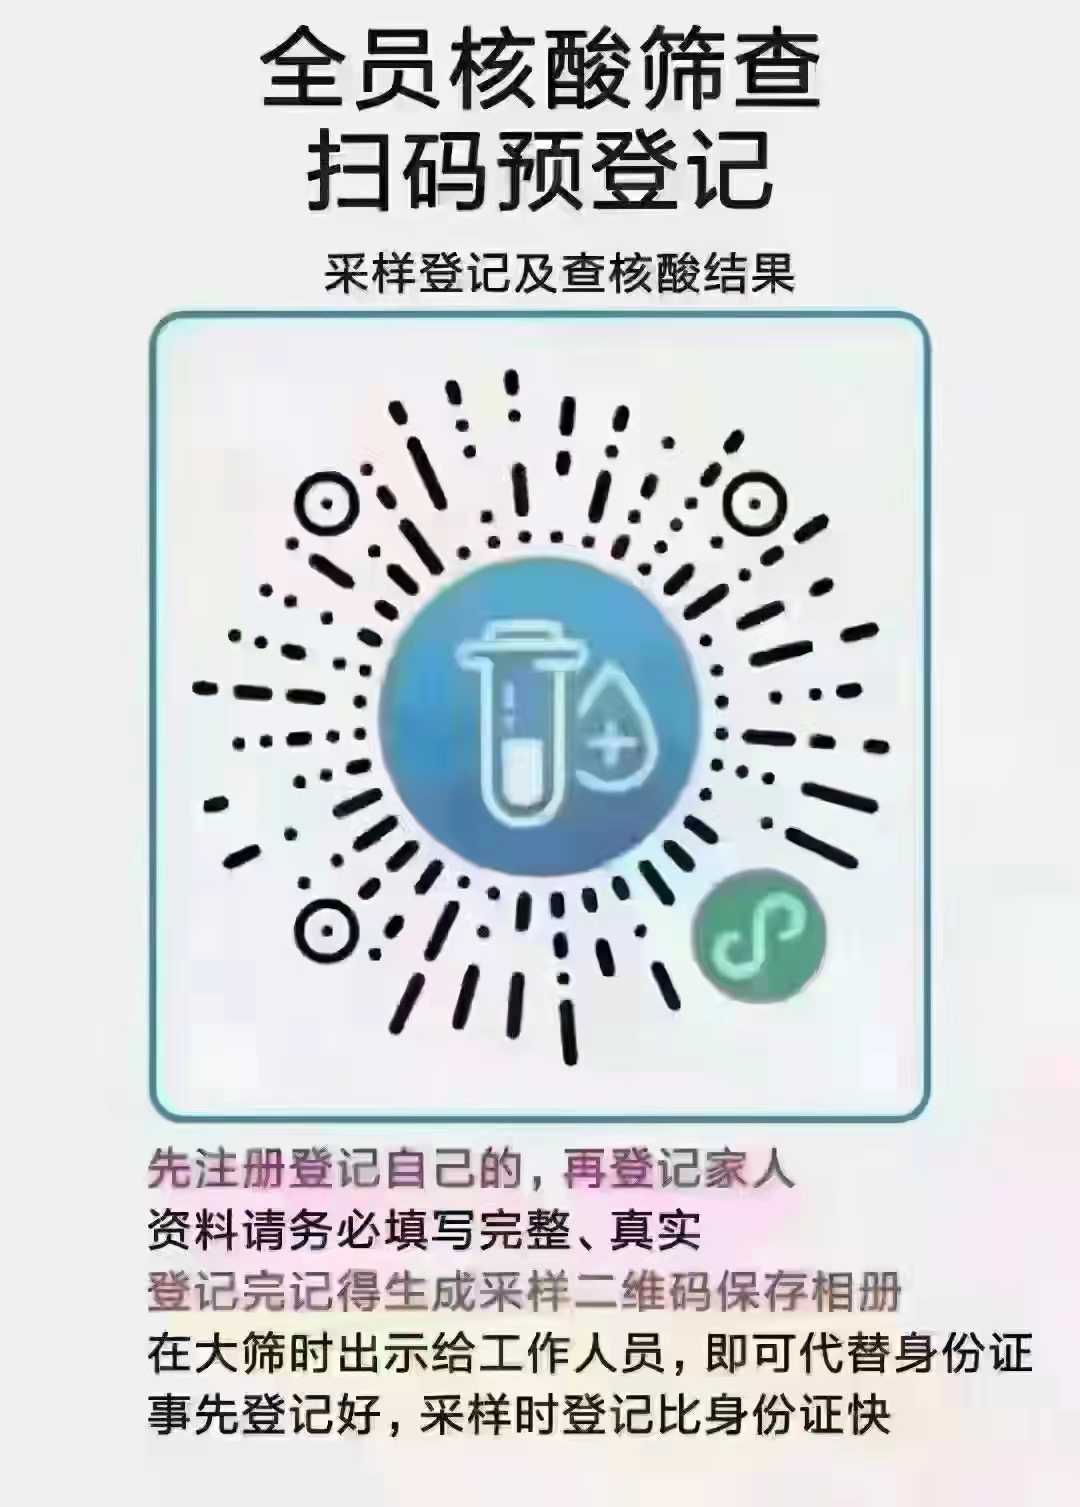 最新消息：28日，霞浦城区部分区域开展核酸检测！